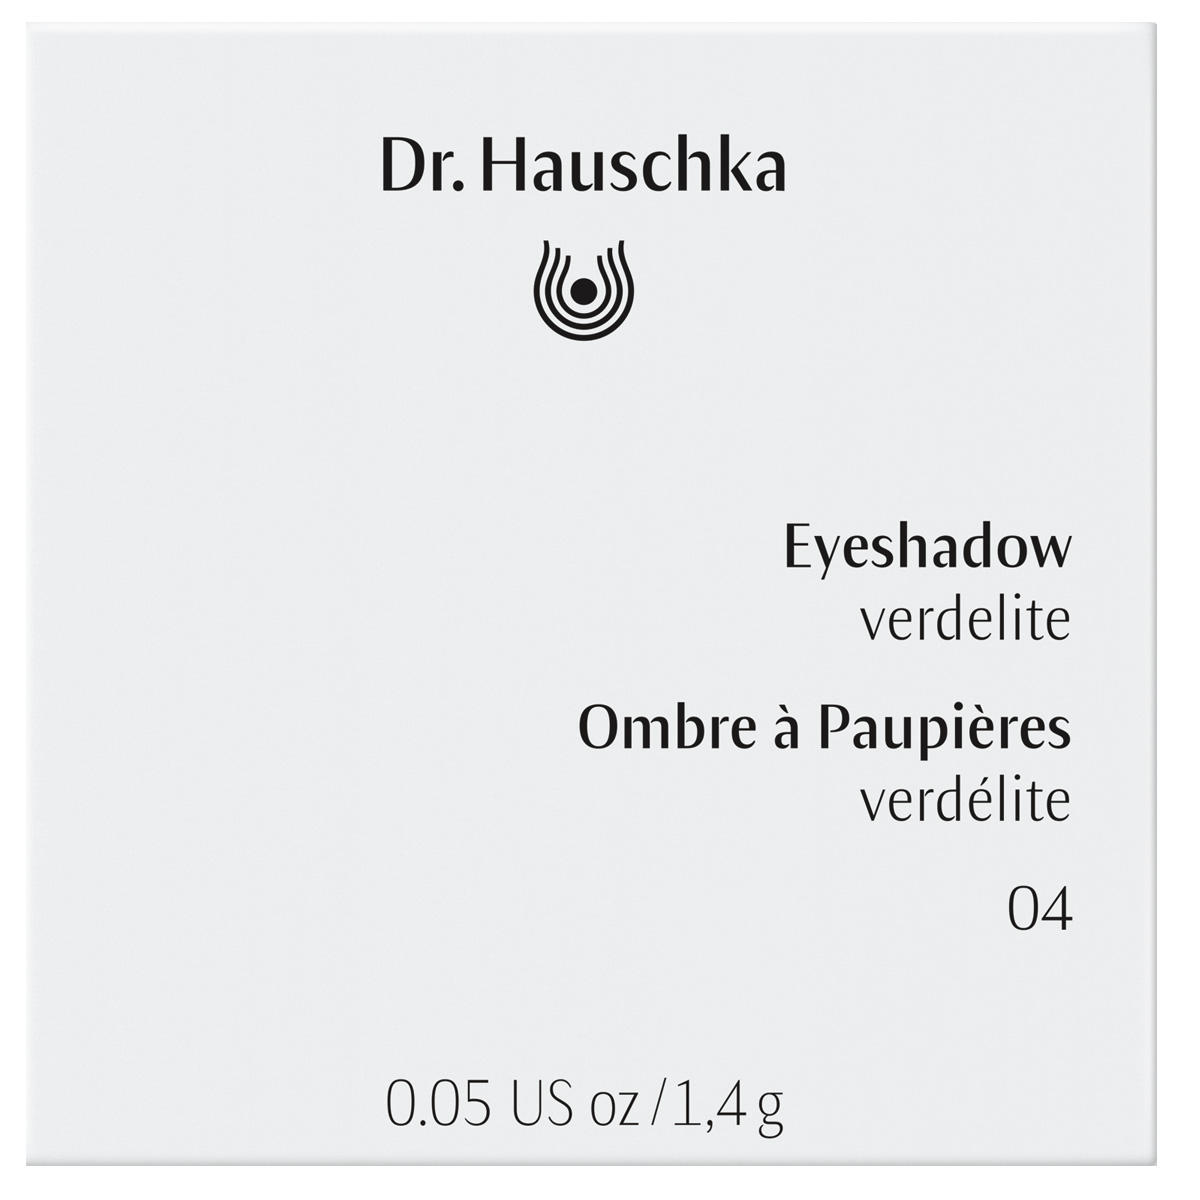 Dr. Hauschka Eyeshadow 04 verdelite, inhoud 1,4 g - 3